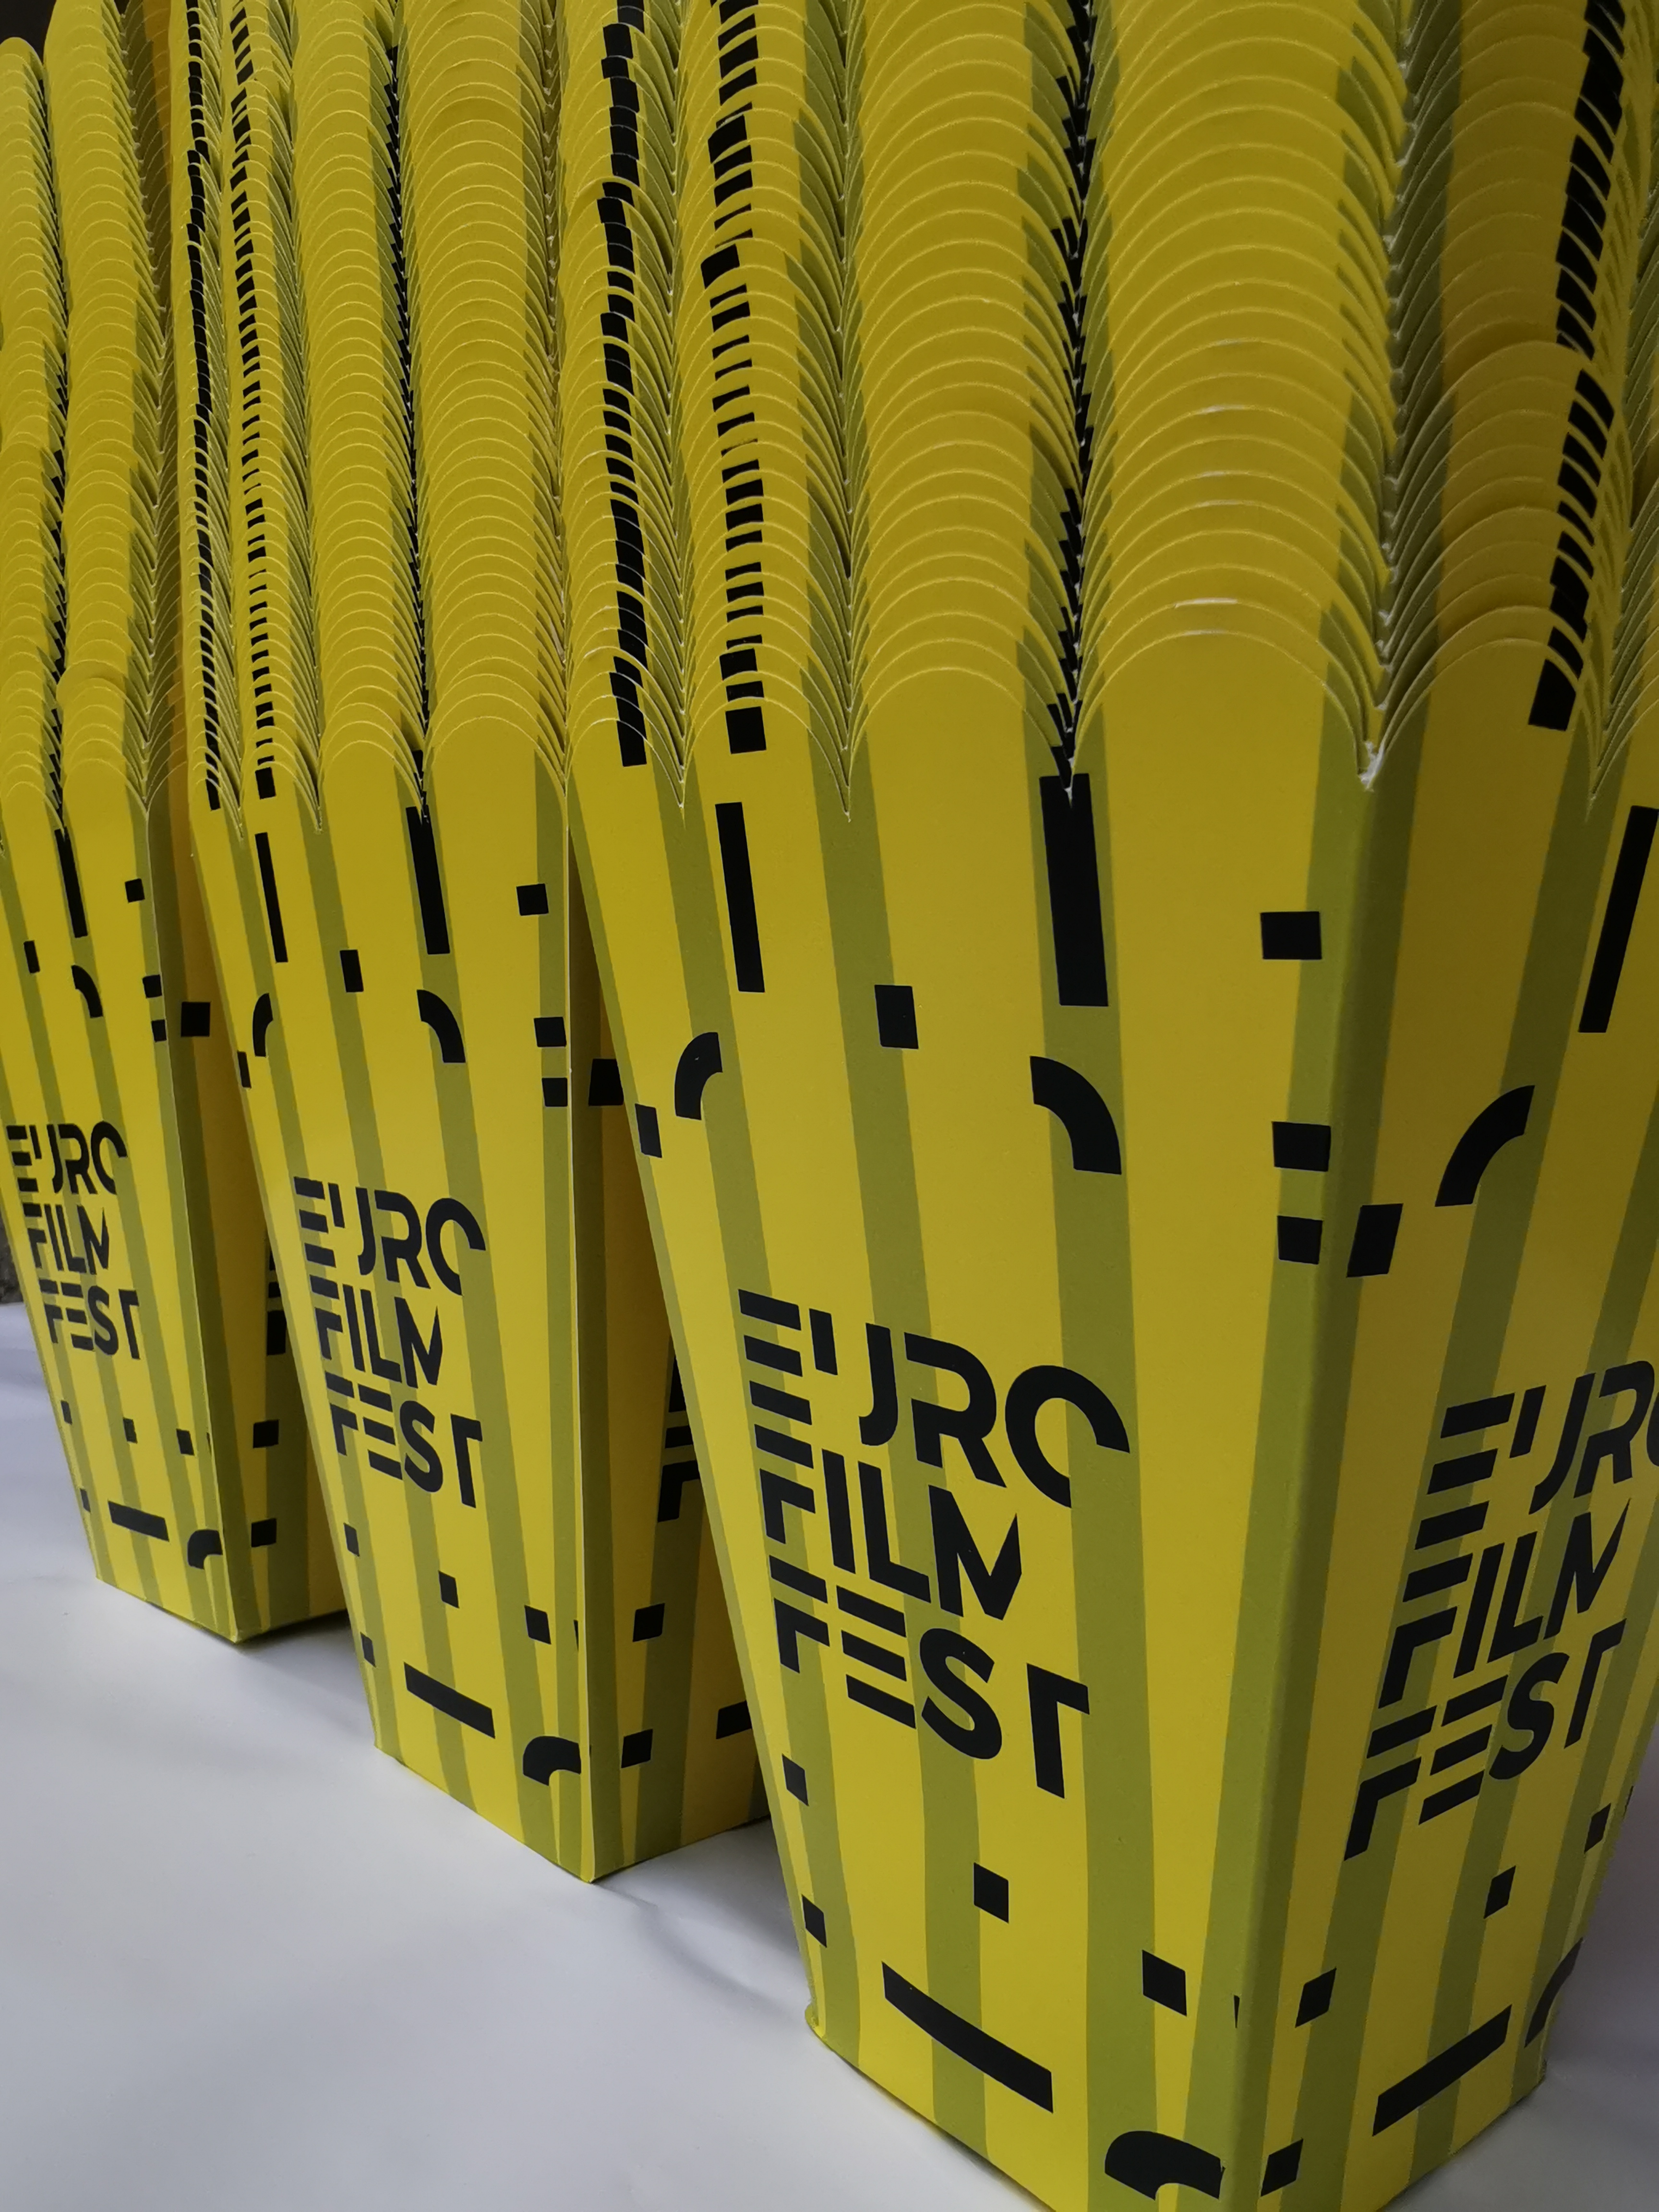 Euro film fest